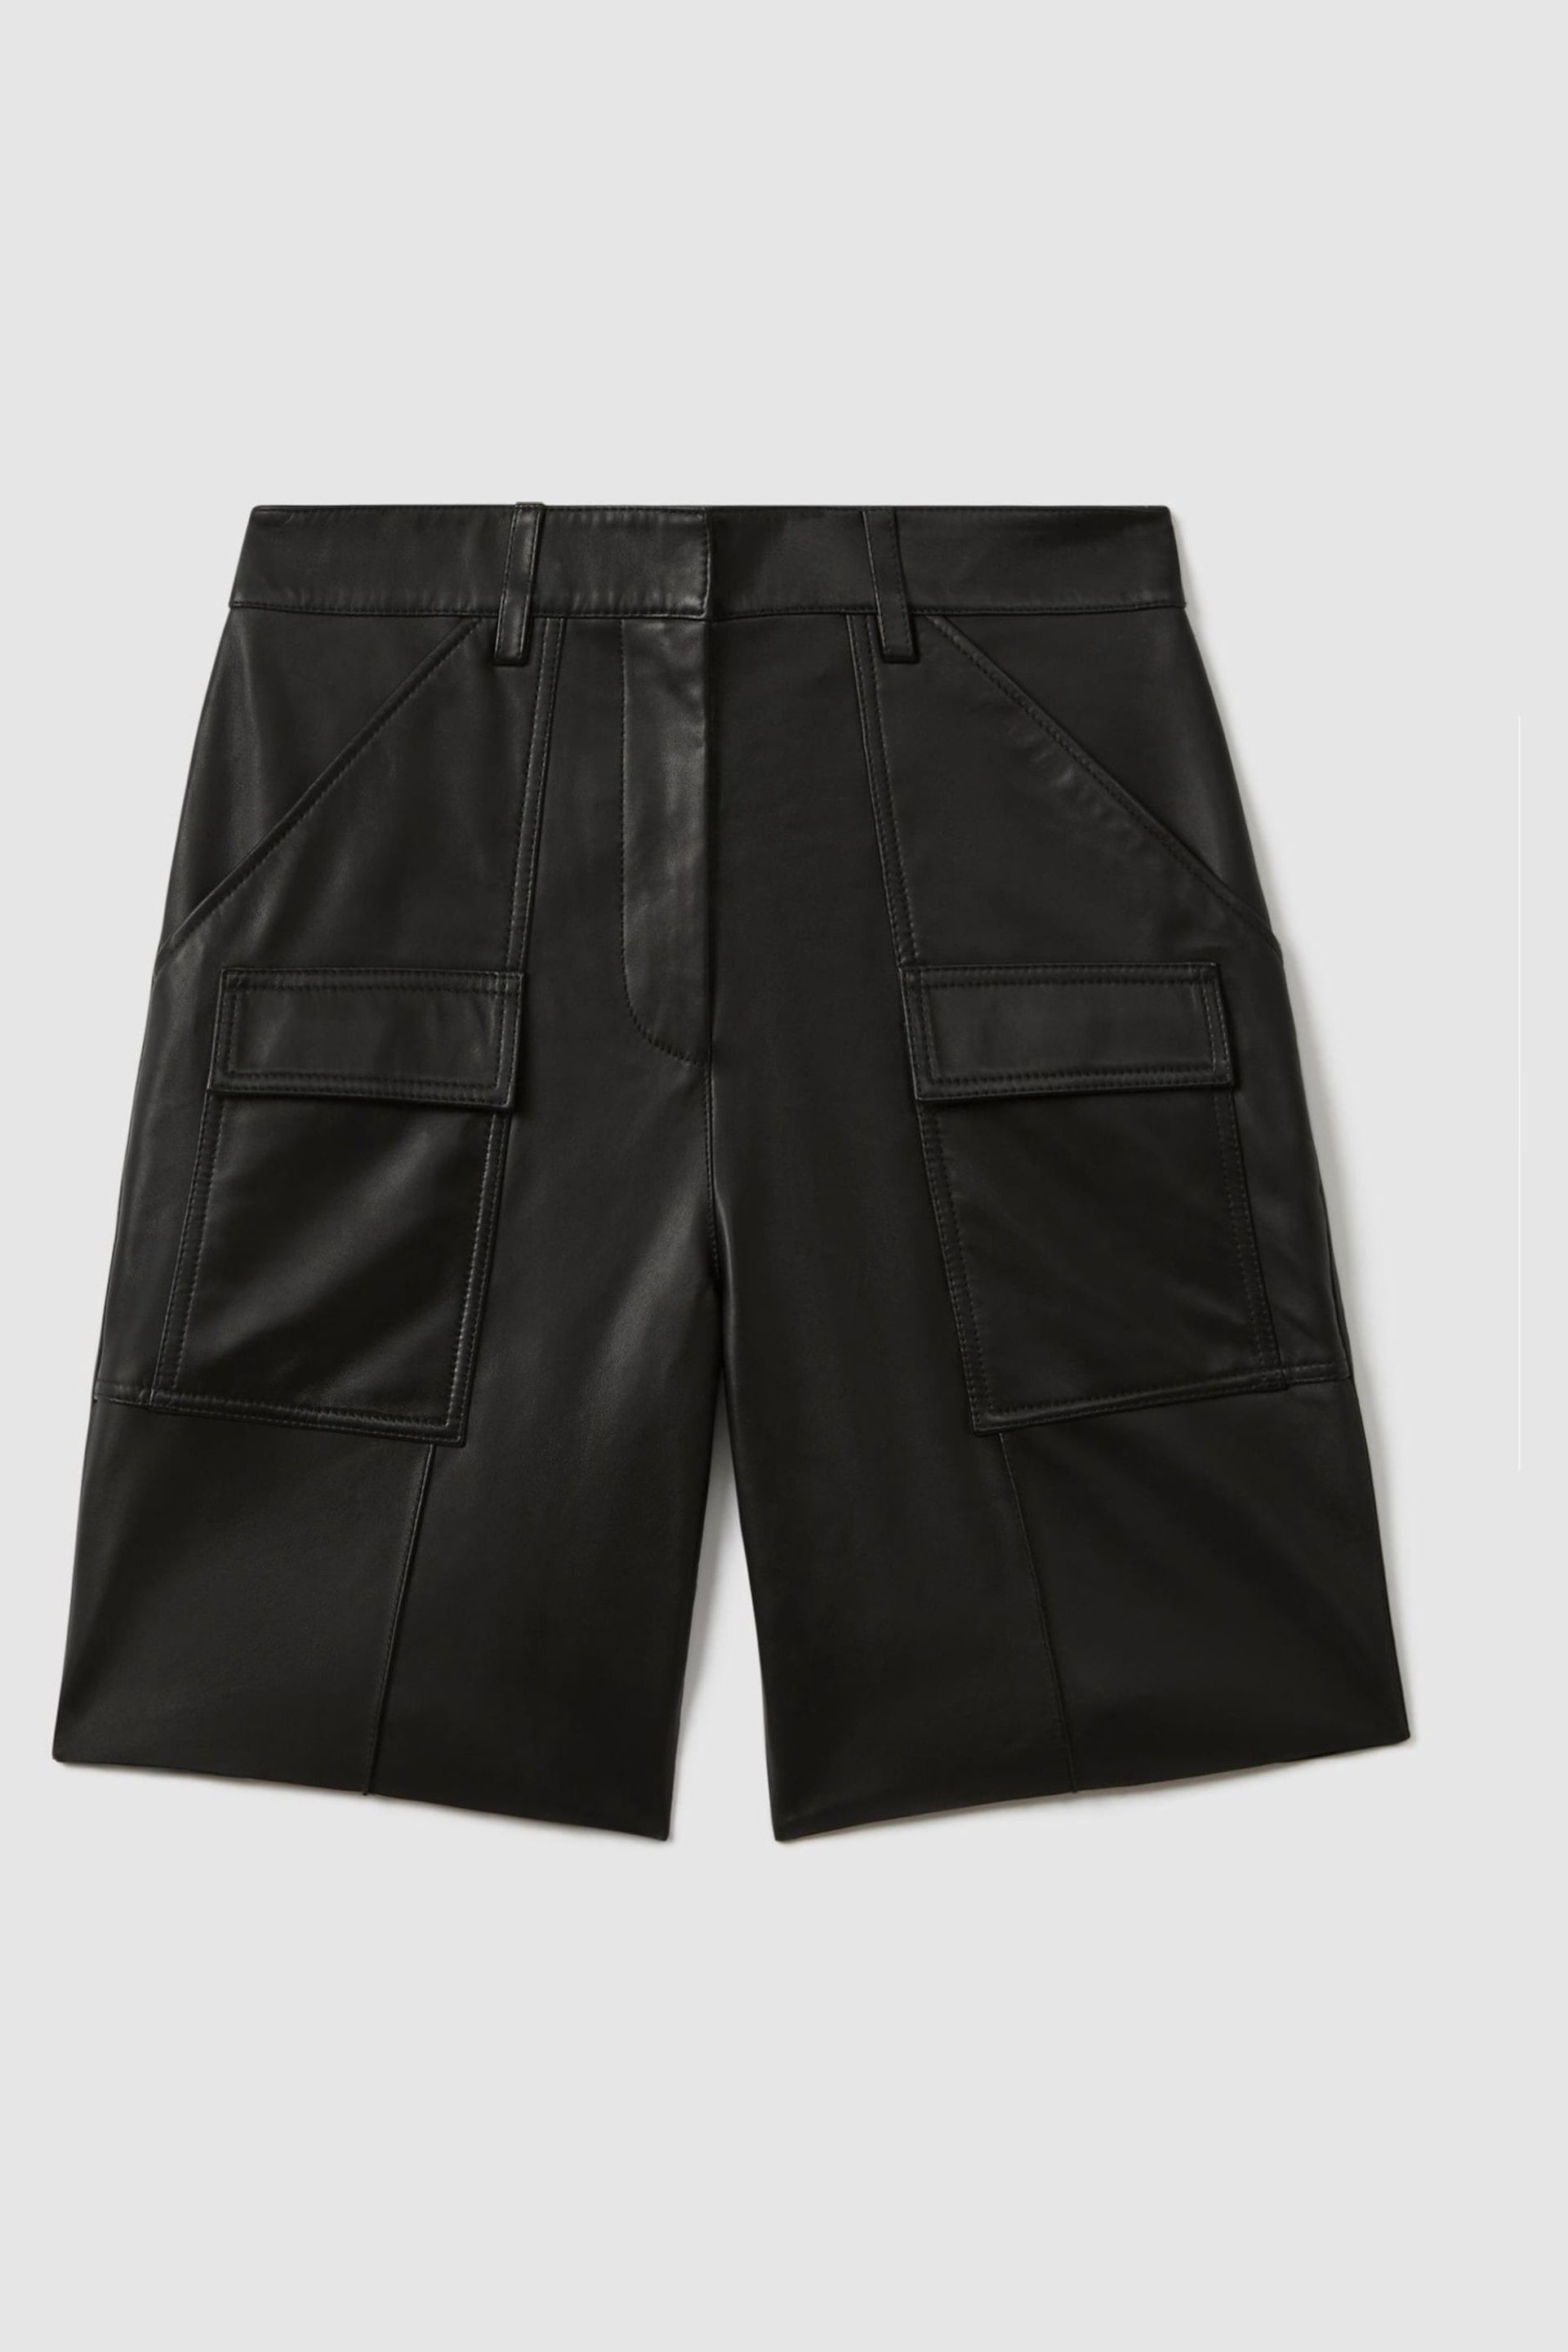 Reiss Black Eliana Leather Cargo Shorts - Image 2 of 7